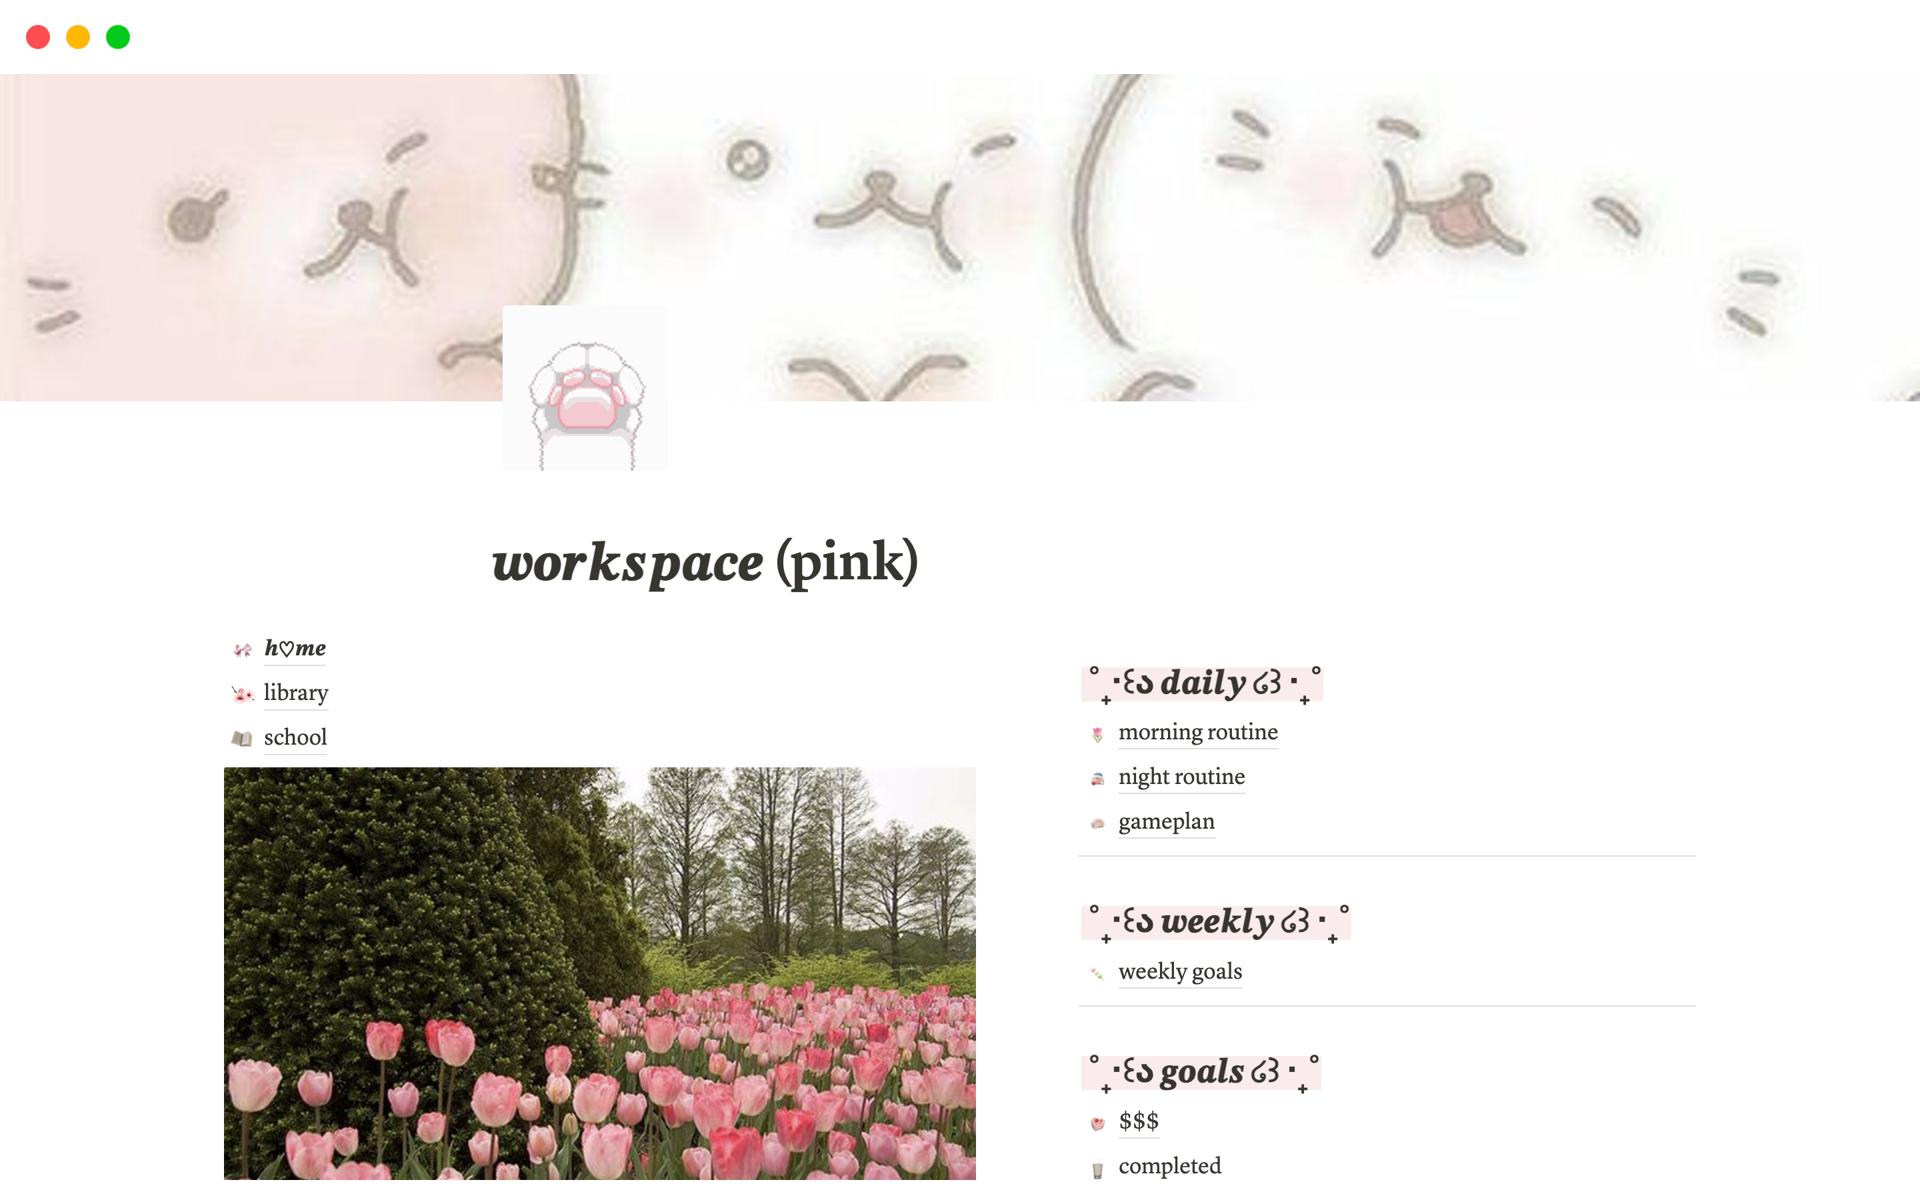 Vista previa de una plantilla para workspace (pink)